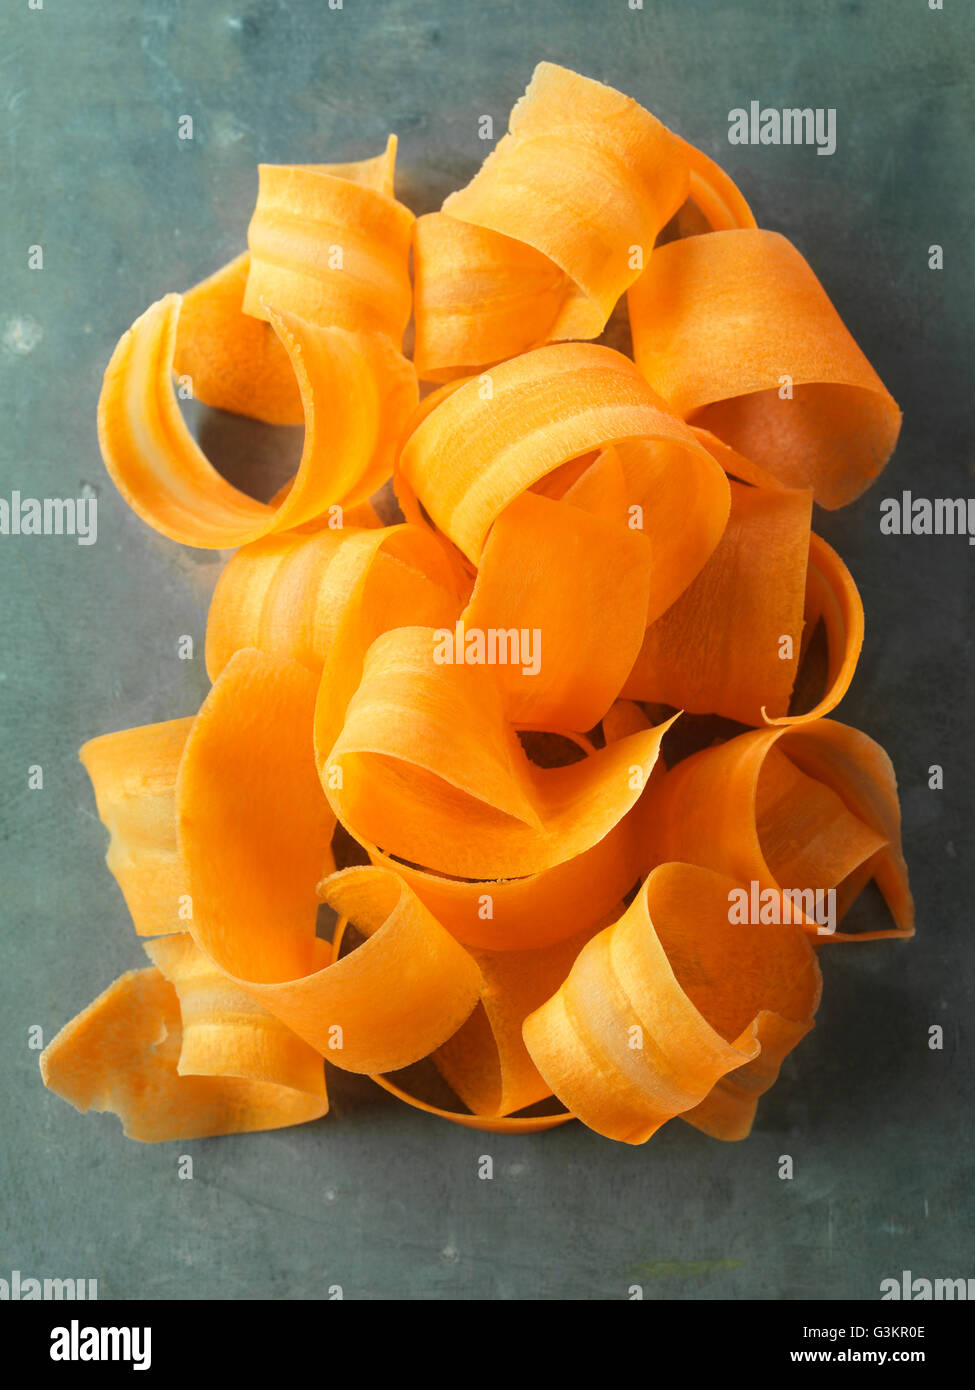 Spiralizzato, trucioli di carota, vista aerea, close-up Foto Stock